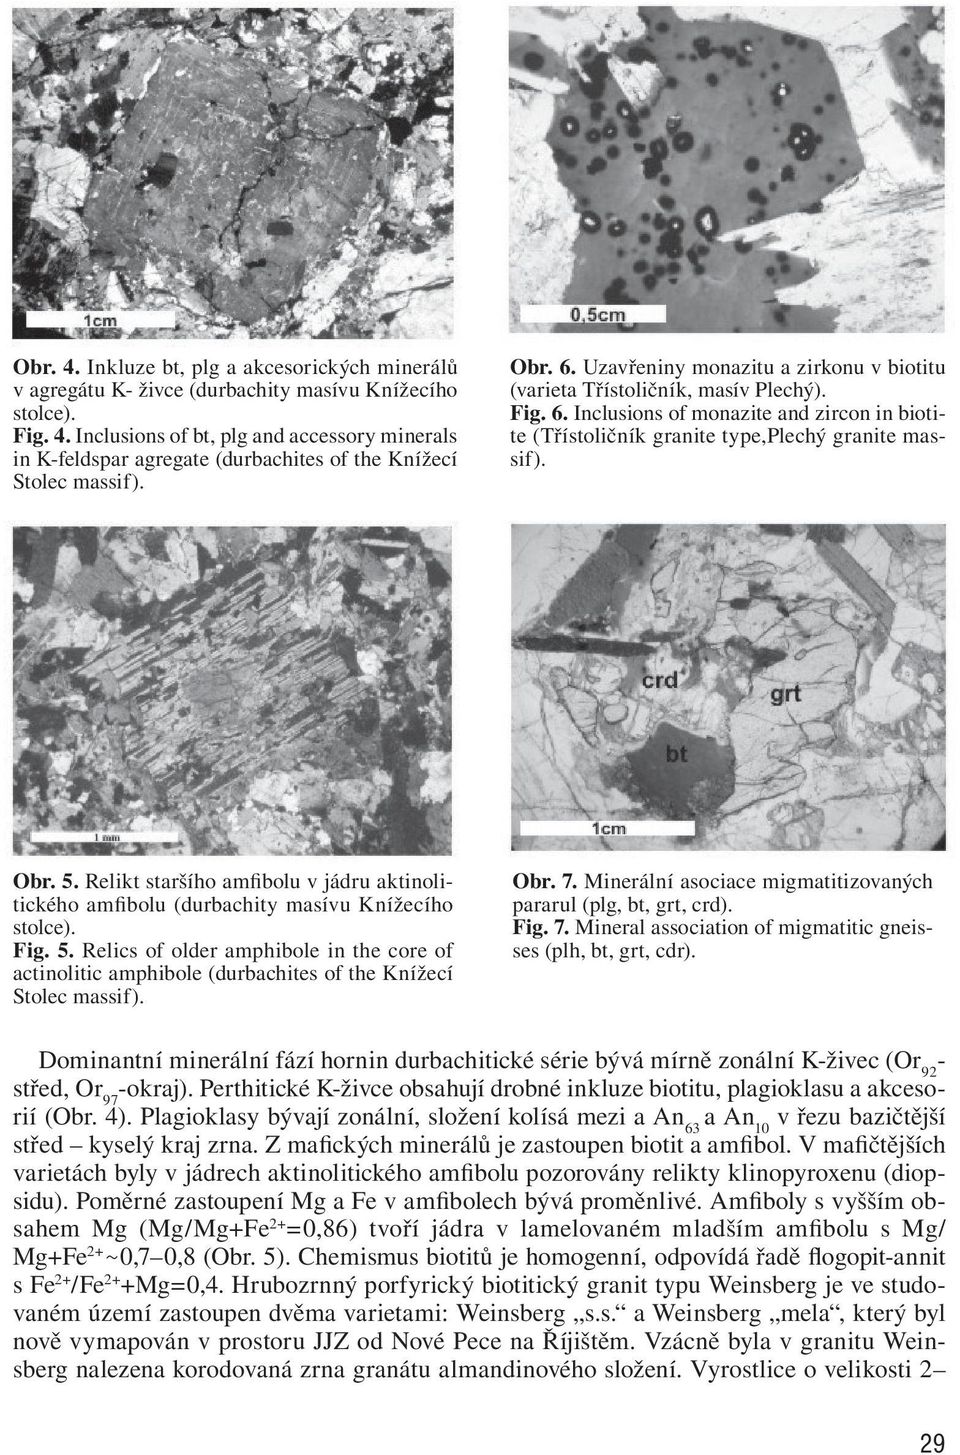 Relikt staršího amfibolu v jádru aktinolitického amfibolu (durbachity masívu Knížecího stolce). Fig. 5.